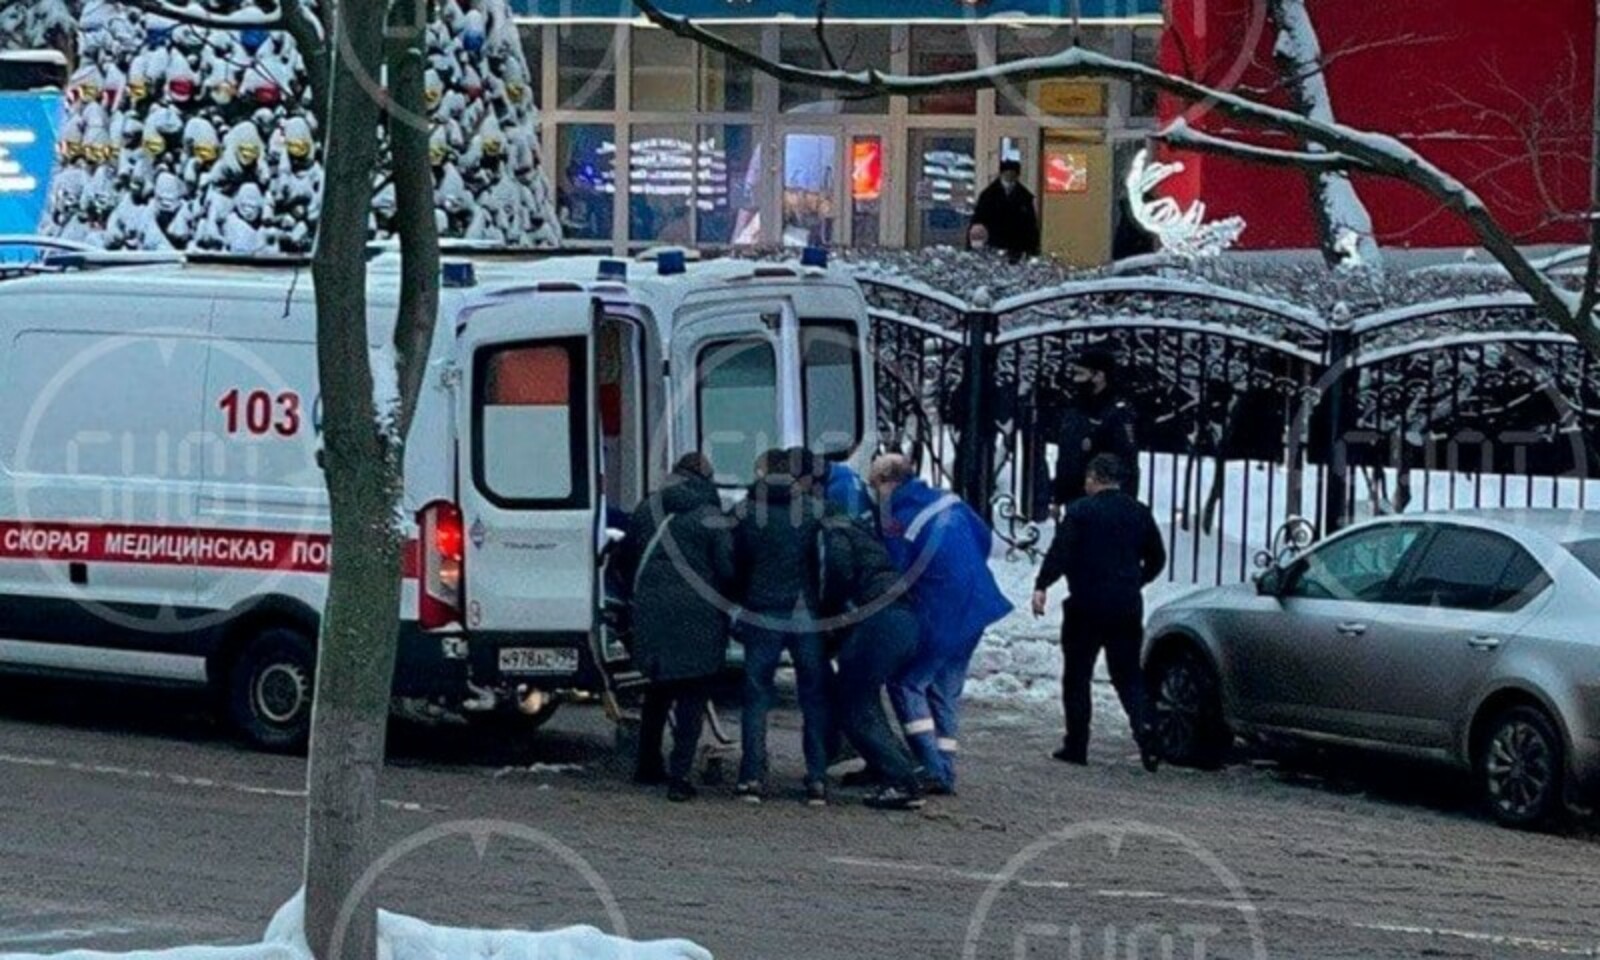 Опубликованы кадры задержания стрелка в МФЦ Москвы